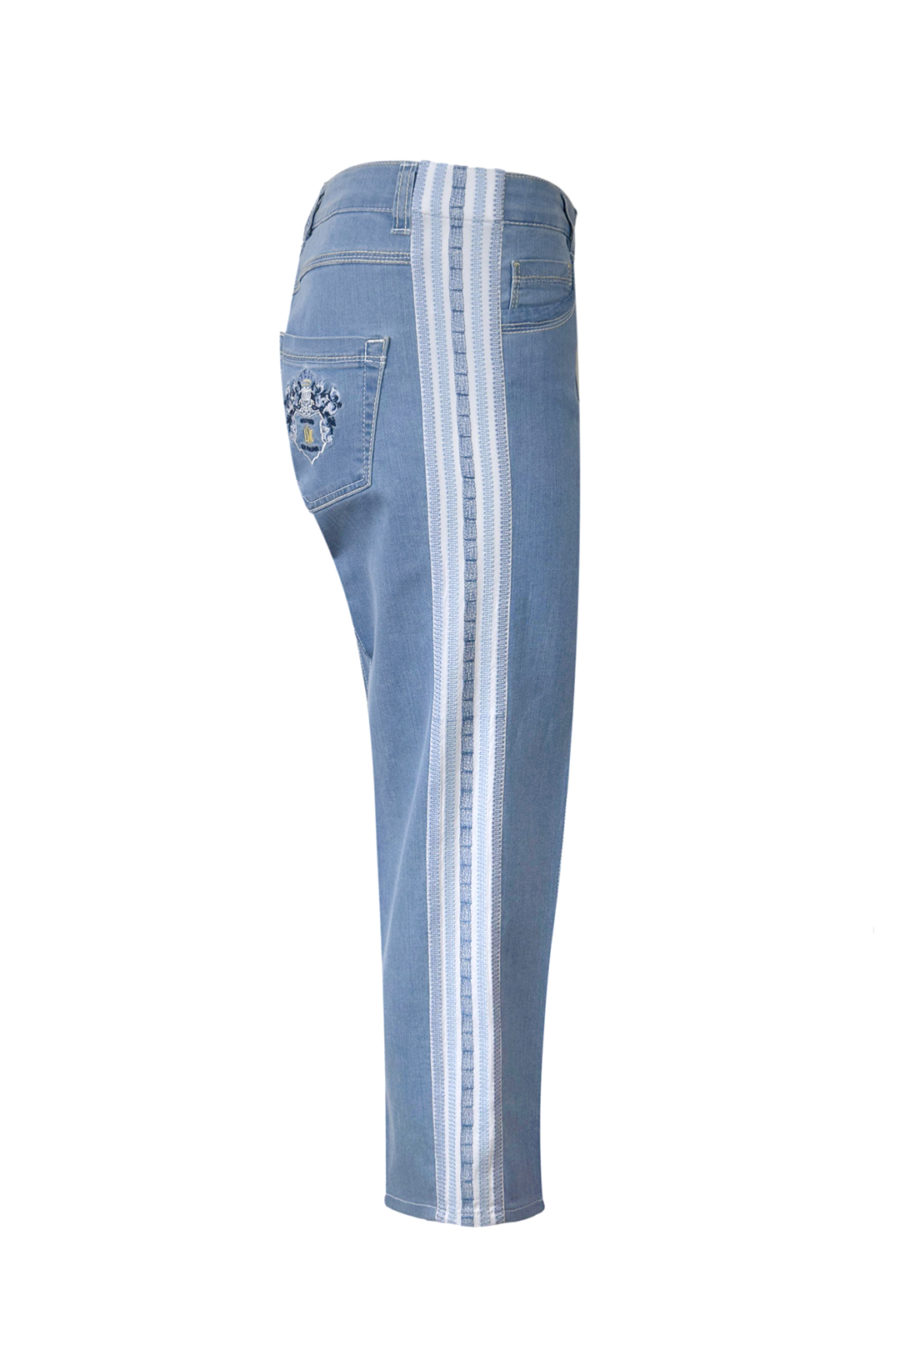 Jeans mit gestickter, elastischer Bordüre und weitem Hosenbein in 7/8 Länge, Farbe: Indigoblau